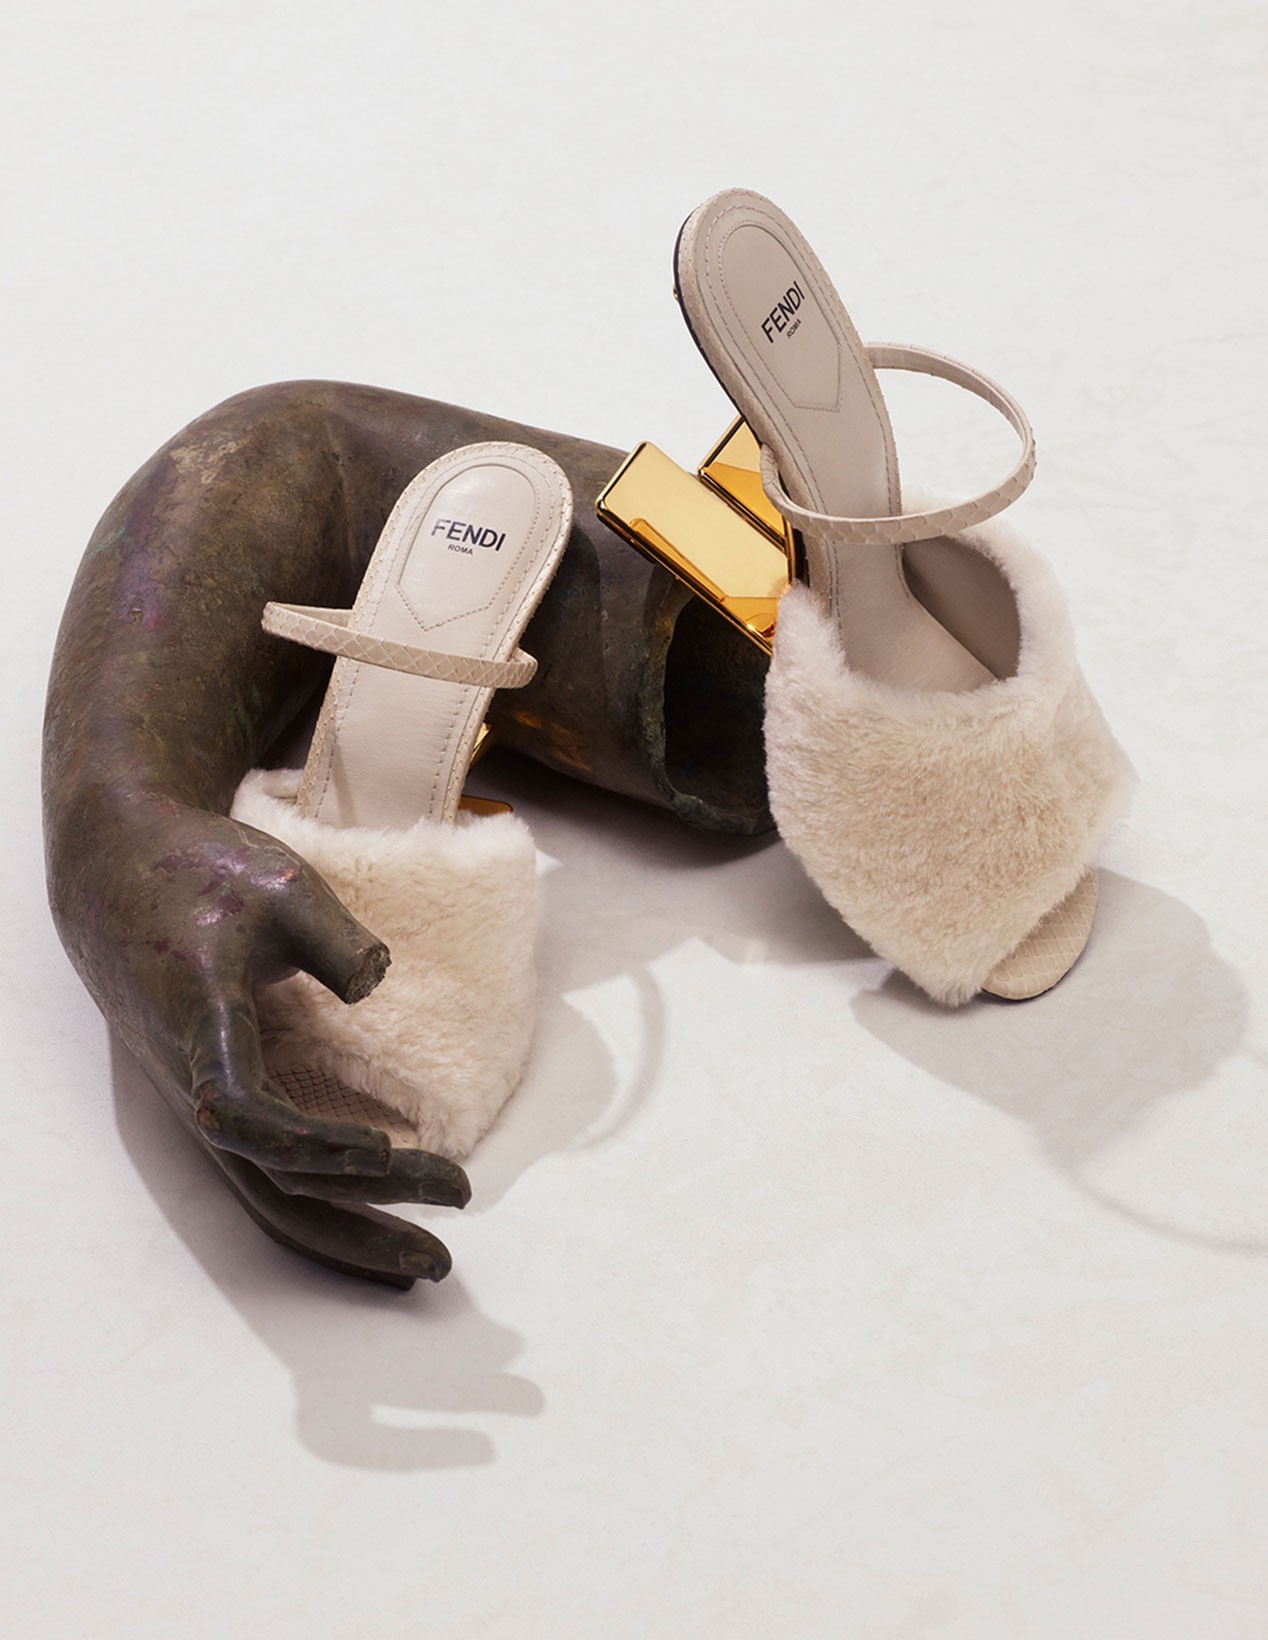 Fendi представил новые сумки и обувь из осенне-зимней коллекции (фото 4)